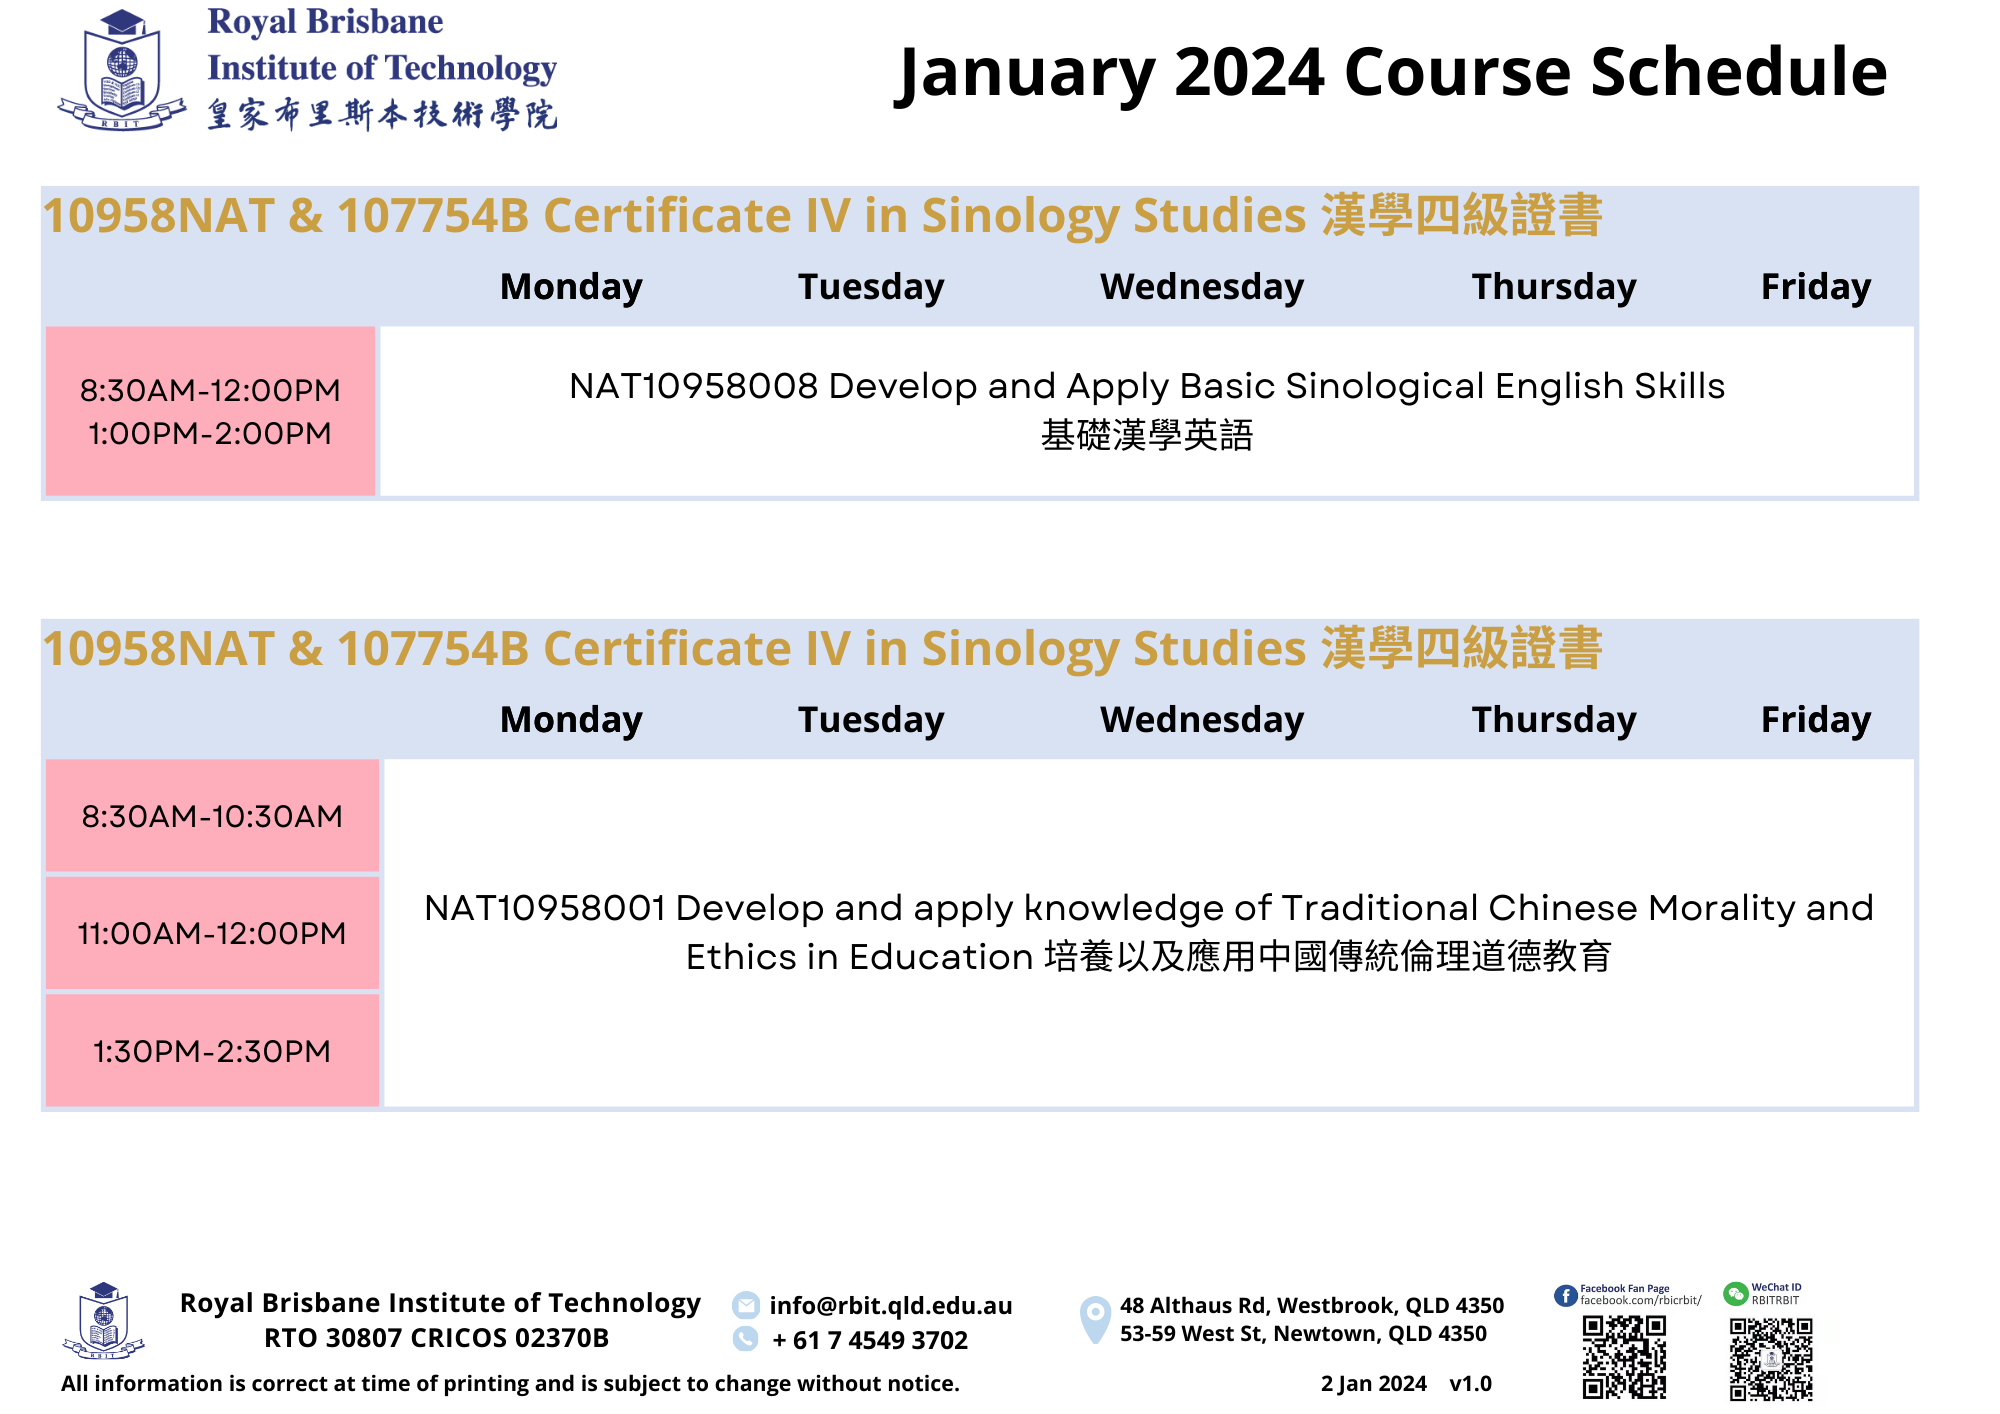 AL0_202401 Course Schedule_v1.0